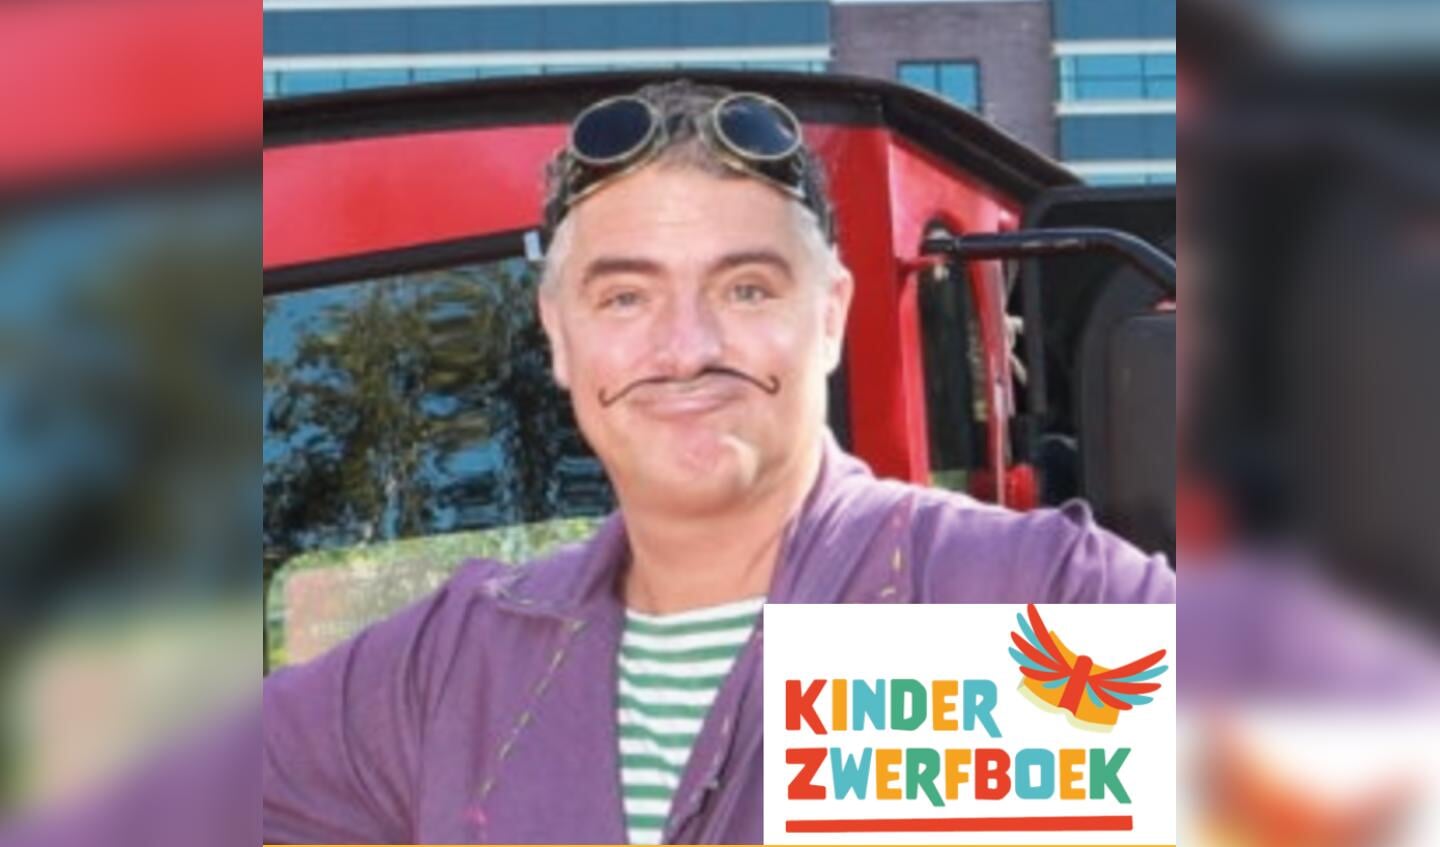 Goochelaar Igor Krulsnor opent maandag 12 juli het KinderzwerfboekStation in het Kulturhus IJsselmuiden